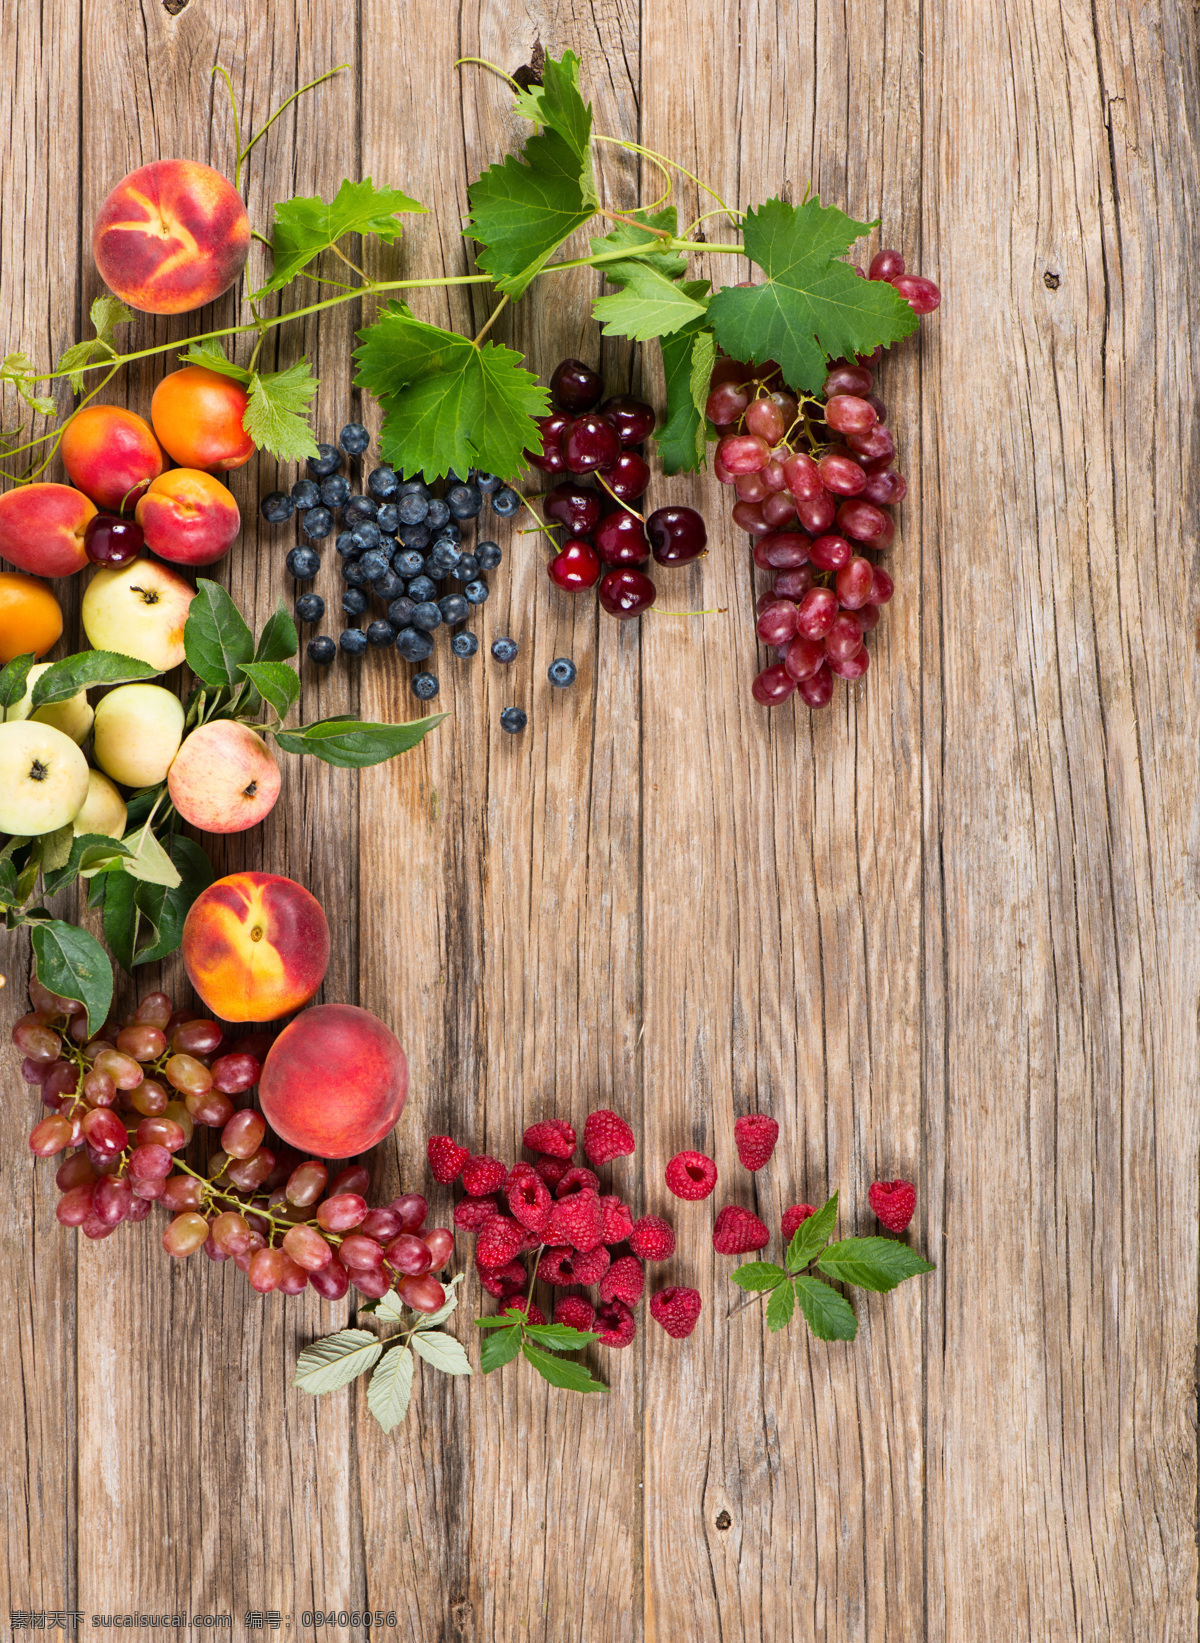 桃子 苹果 葡萄 树莓 蓝莓 提子 新鲜水果 水果摄影 果实 水果蔬菜 餐饮美食 水果图片